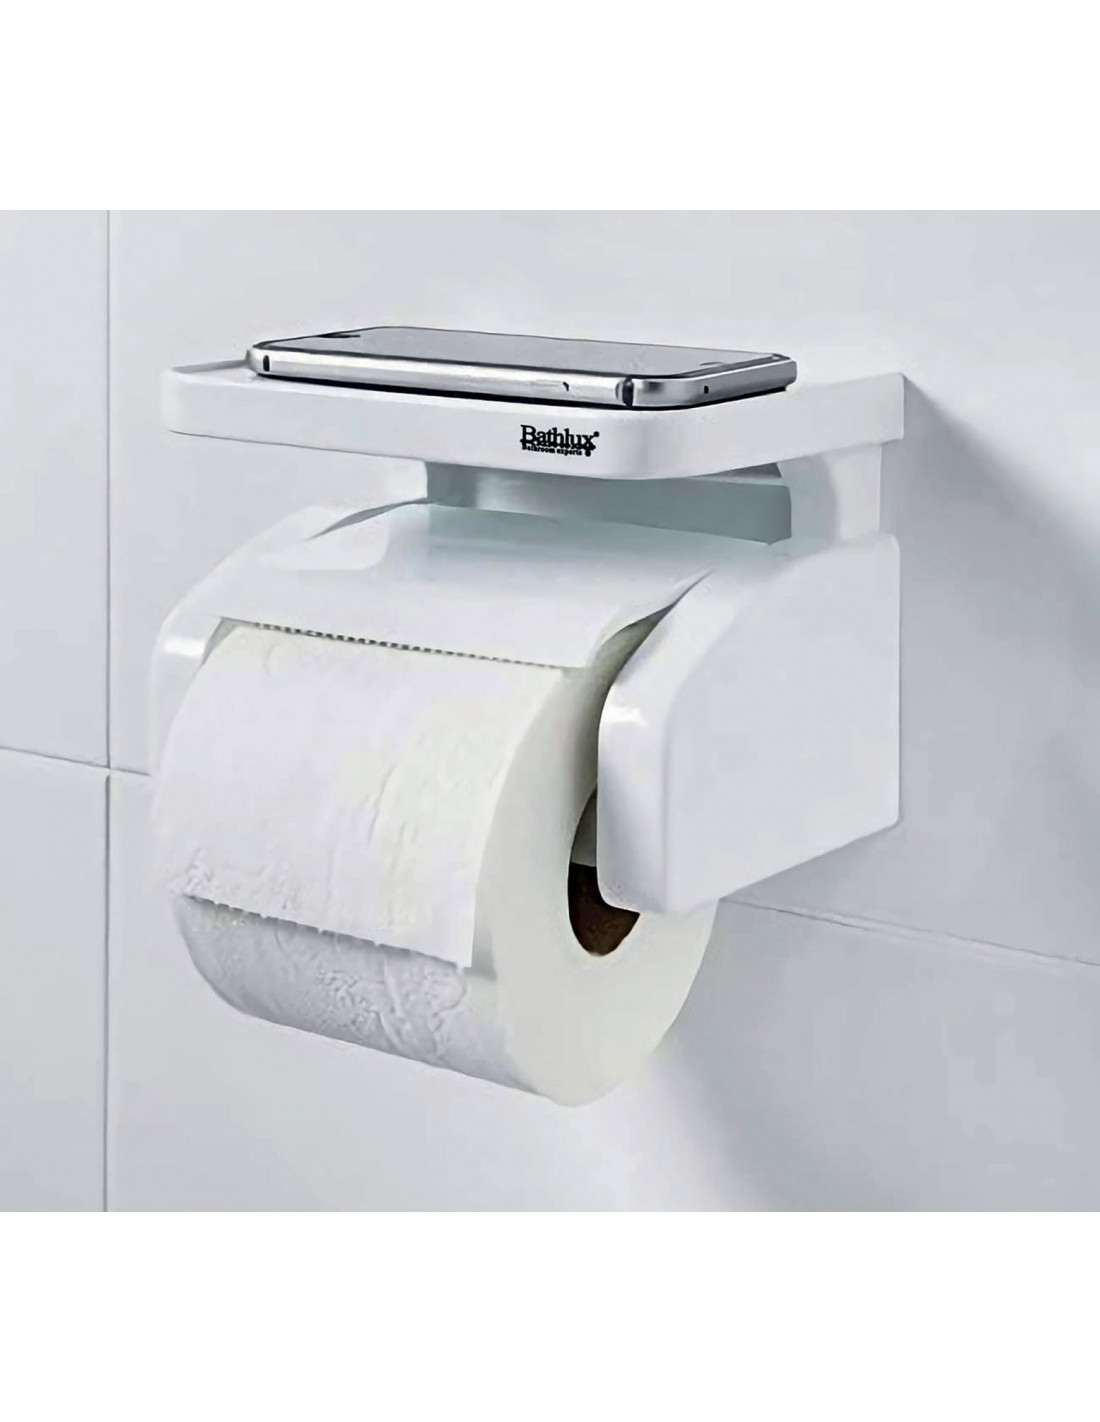 Distributeur Papier Toilette Mixte